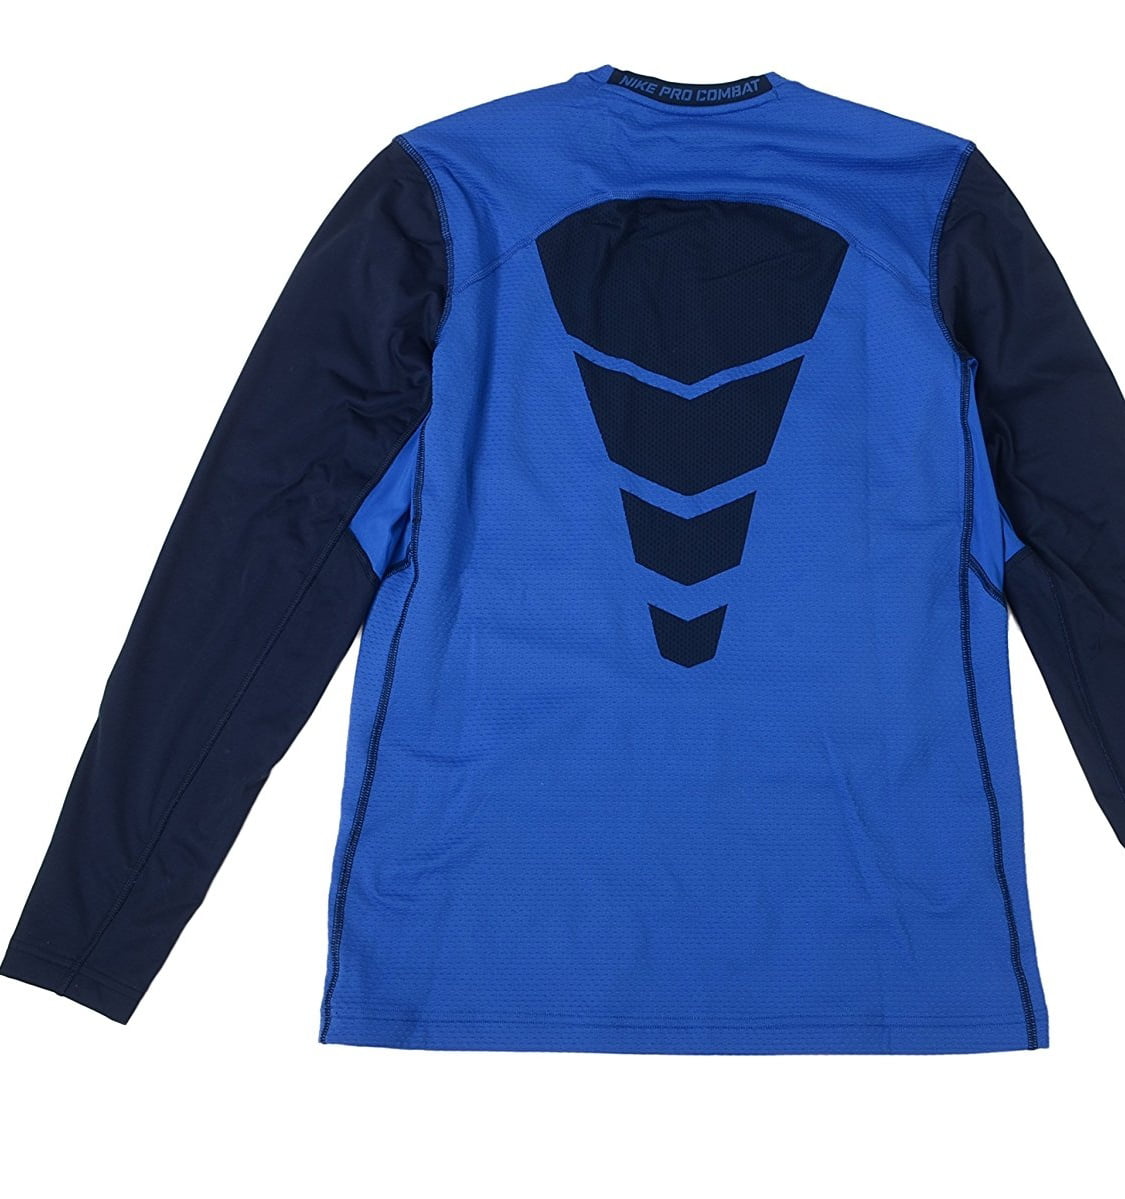 Nike Men's Pro Combat Hyperwarm Fitted Dri-fit Max Shield Shirt - Walmart.com